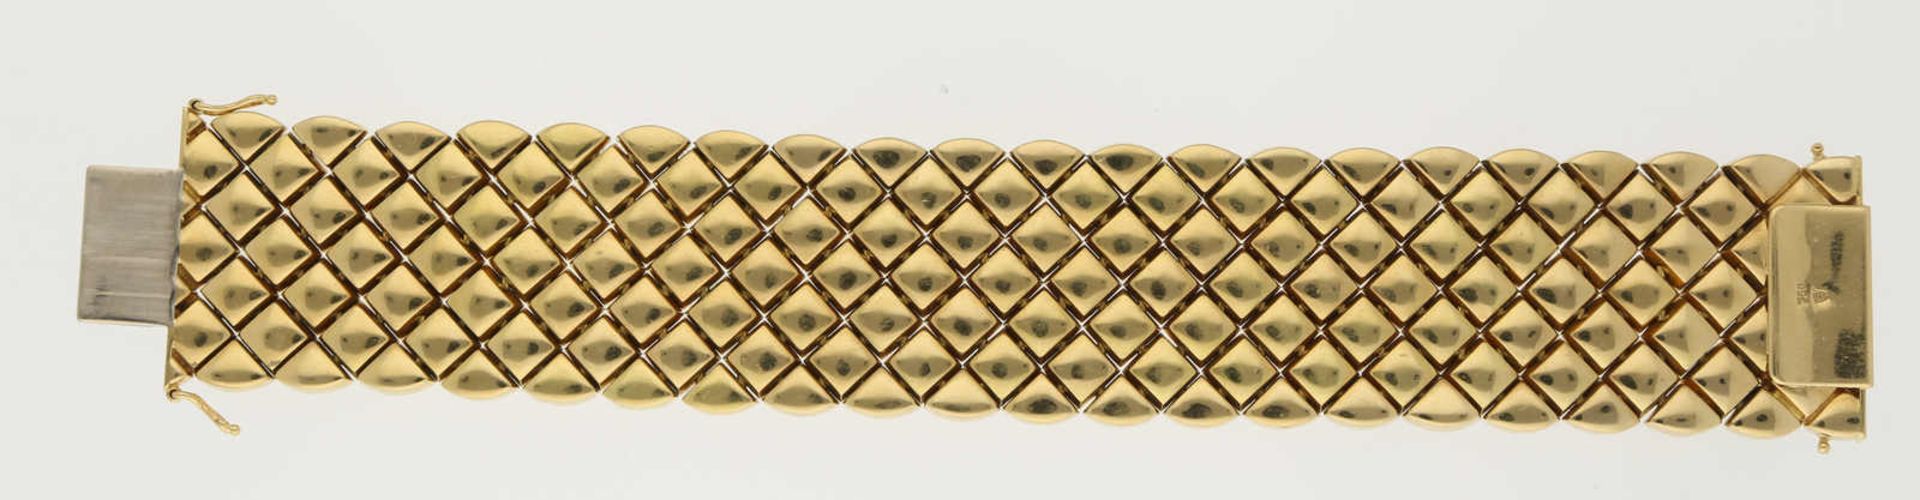 Gold-Armband Prachtvolles Design in Gelbgold 18K mit hübsch gravierten Bordüren und viereckigen - Image 4 of 4